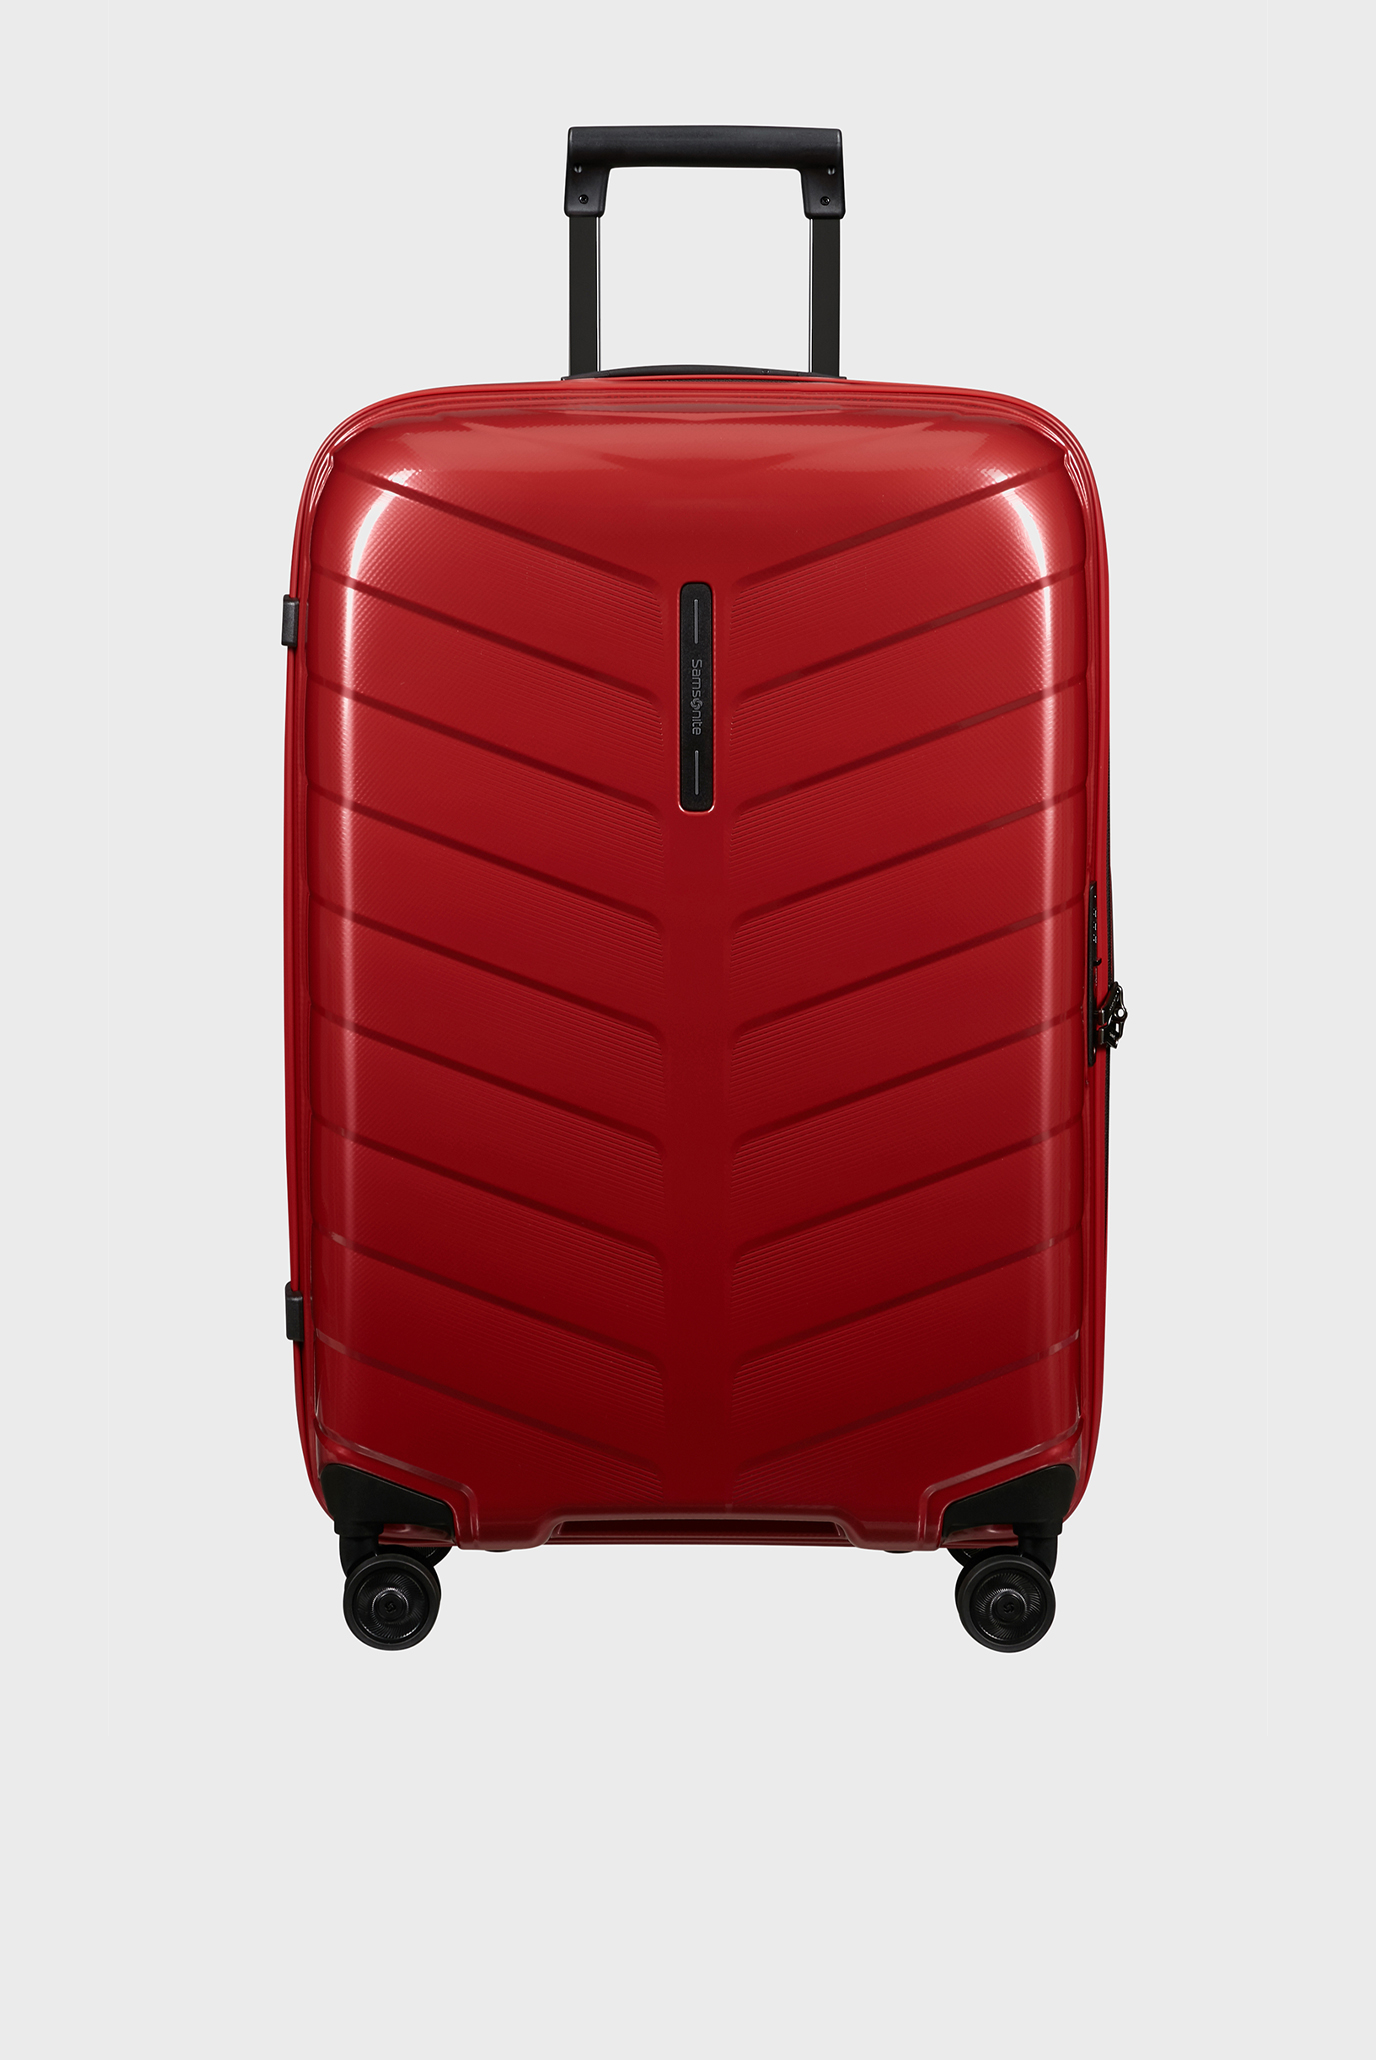 Червона валіза 69 см ATTRIX 1